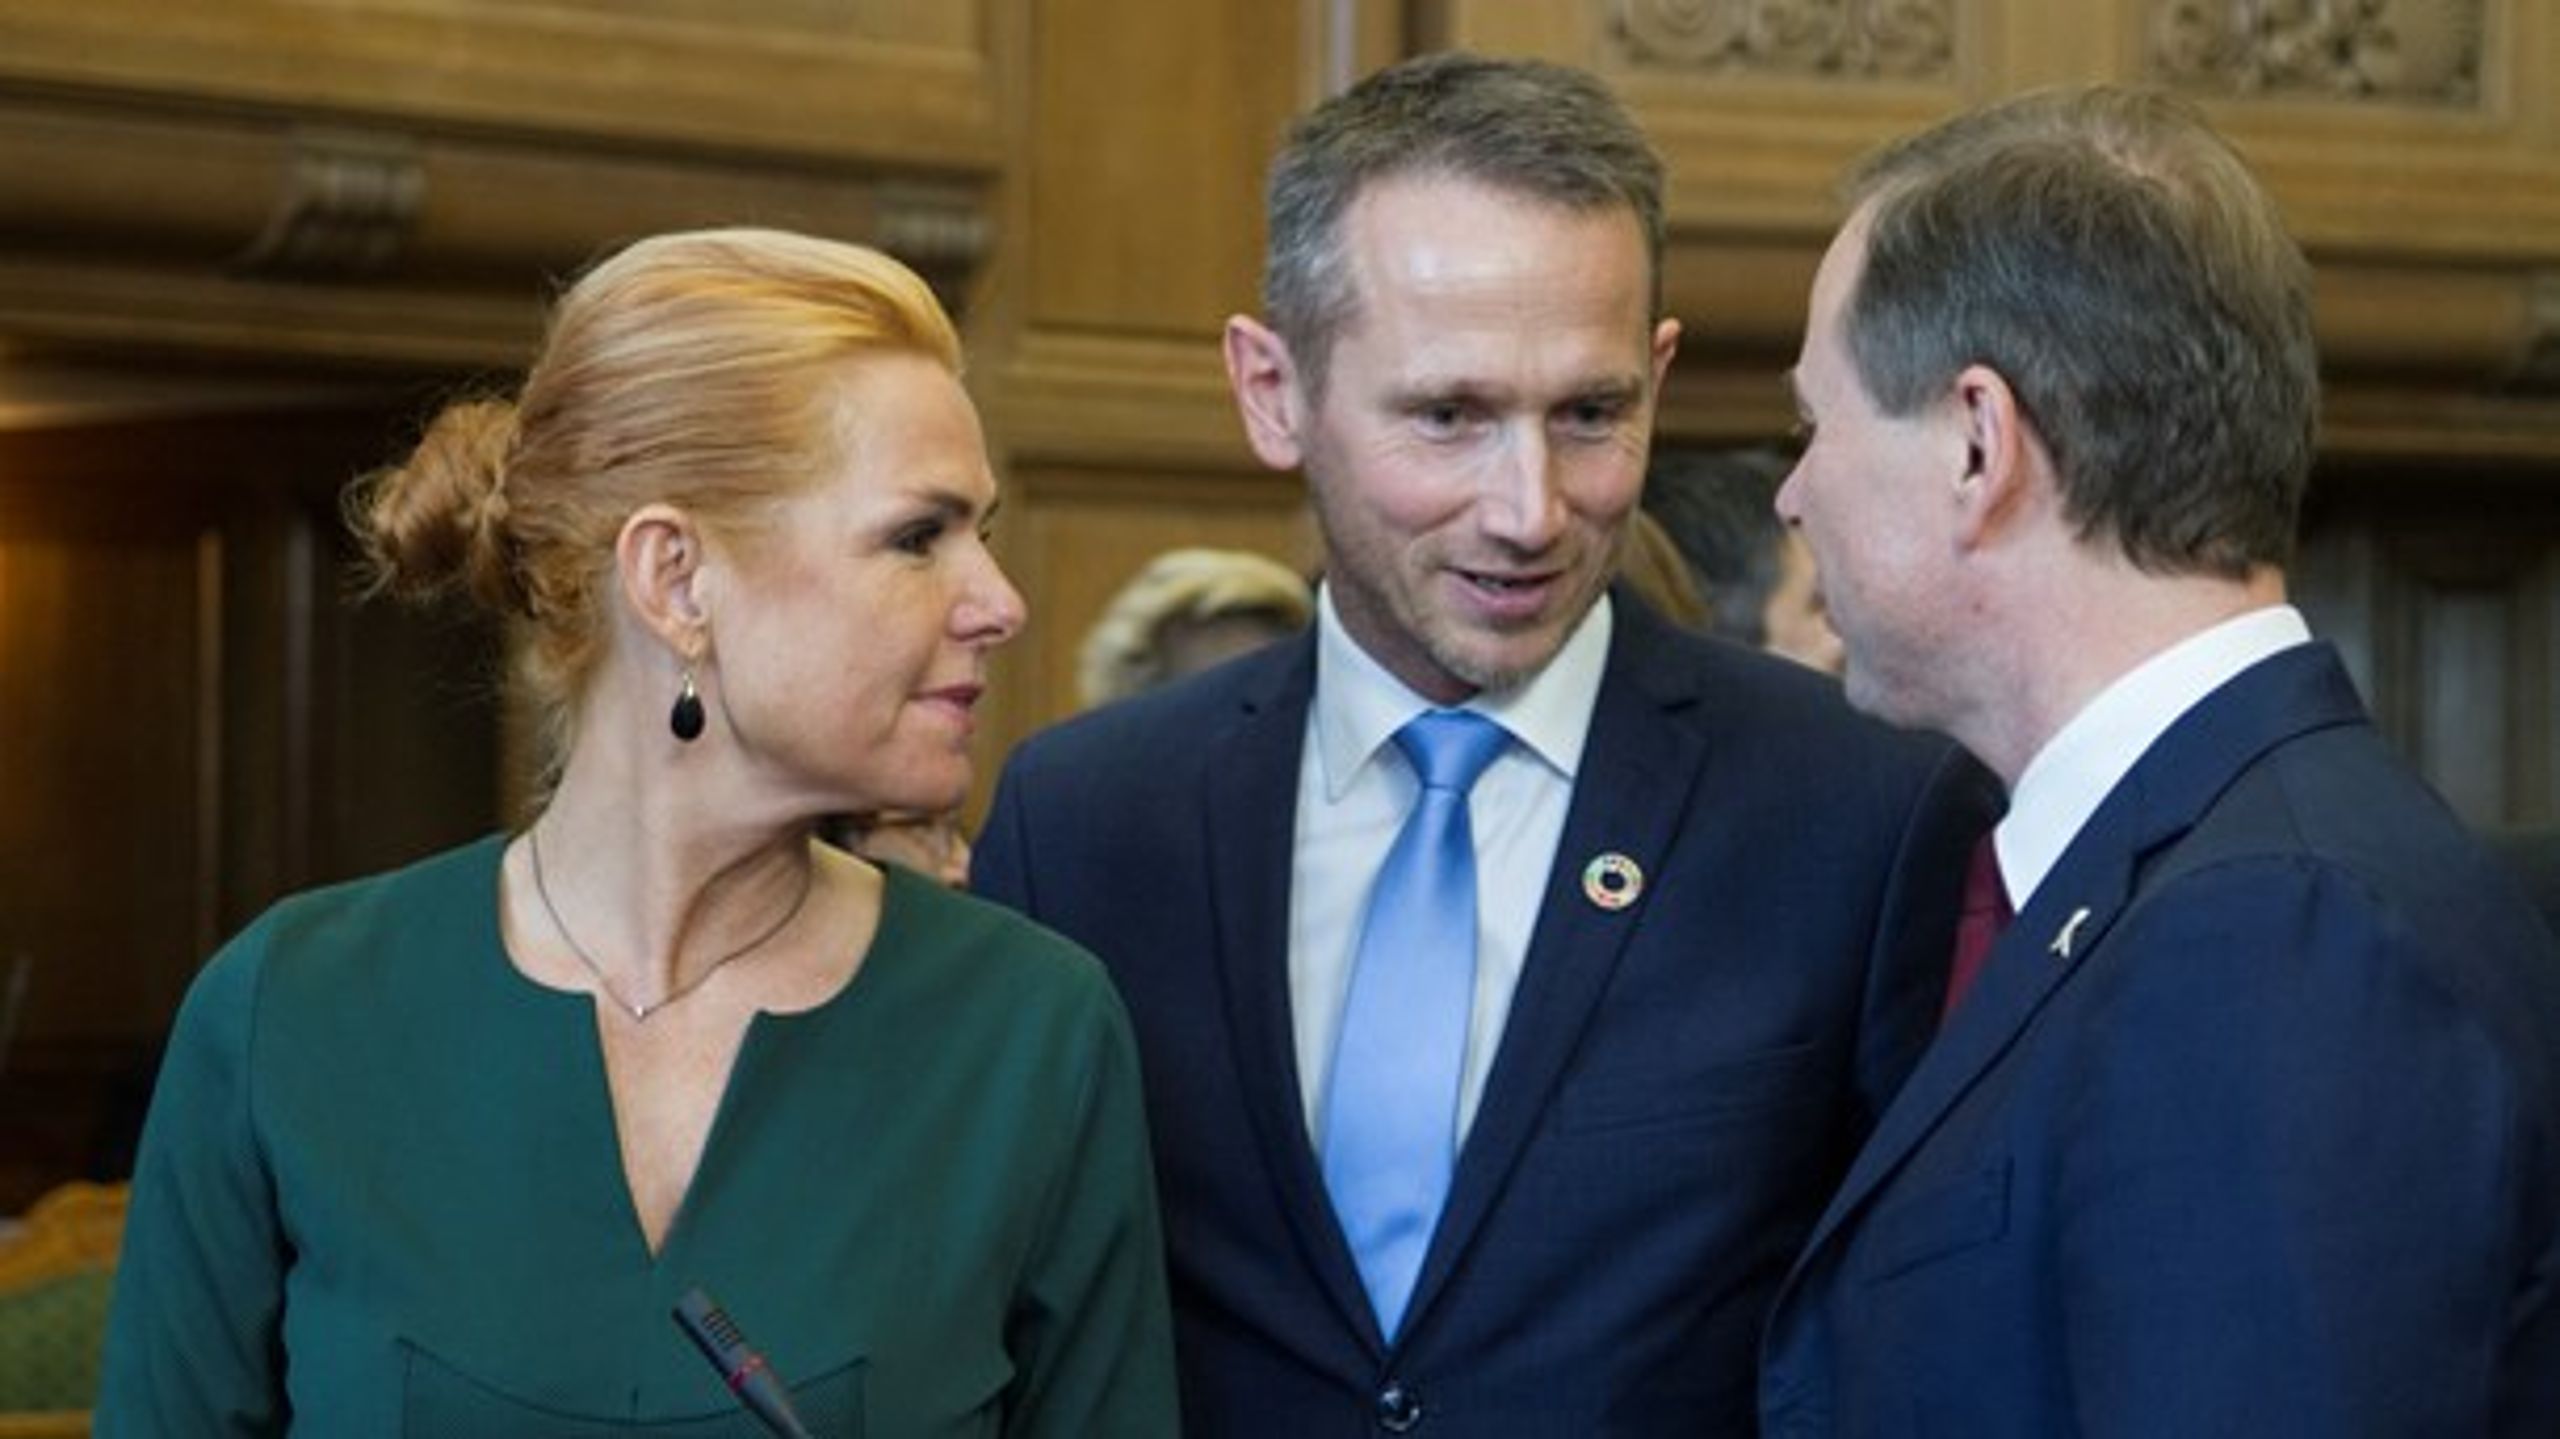 Udlændinge- og integrationsminister Inger Støjberg (V) og finansminister Kristian Jensen (V) er nogle af de V-profiler, der har modtaget de hemmeligholdte pengedonationer.